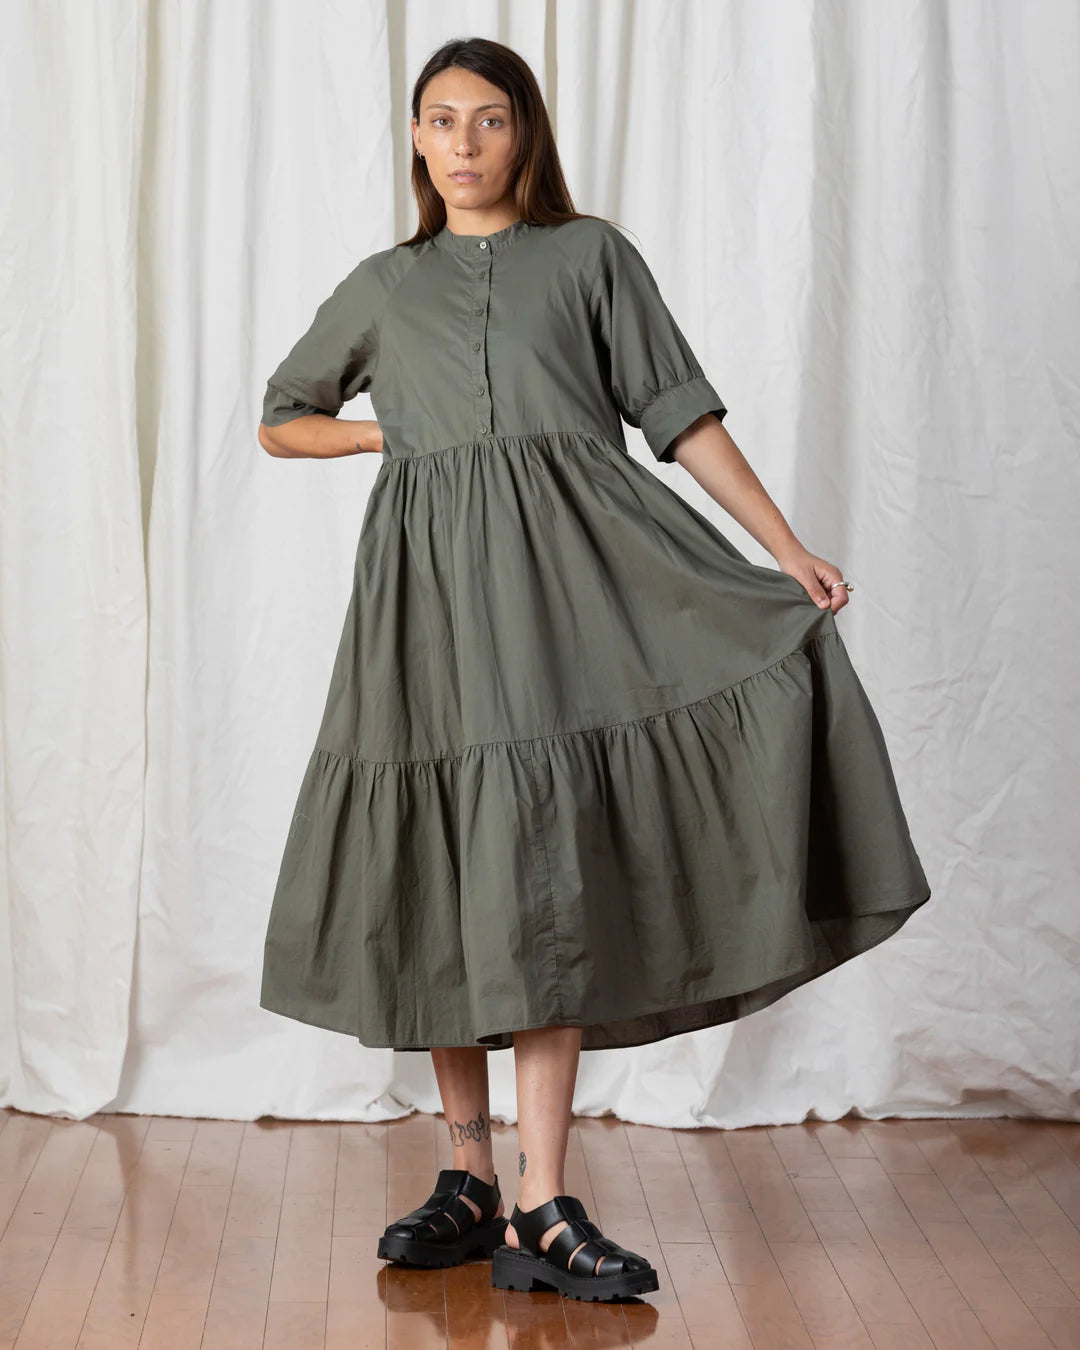 Raglan Tiered Dress - Faded Olive